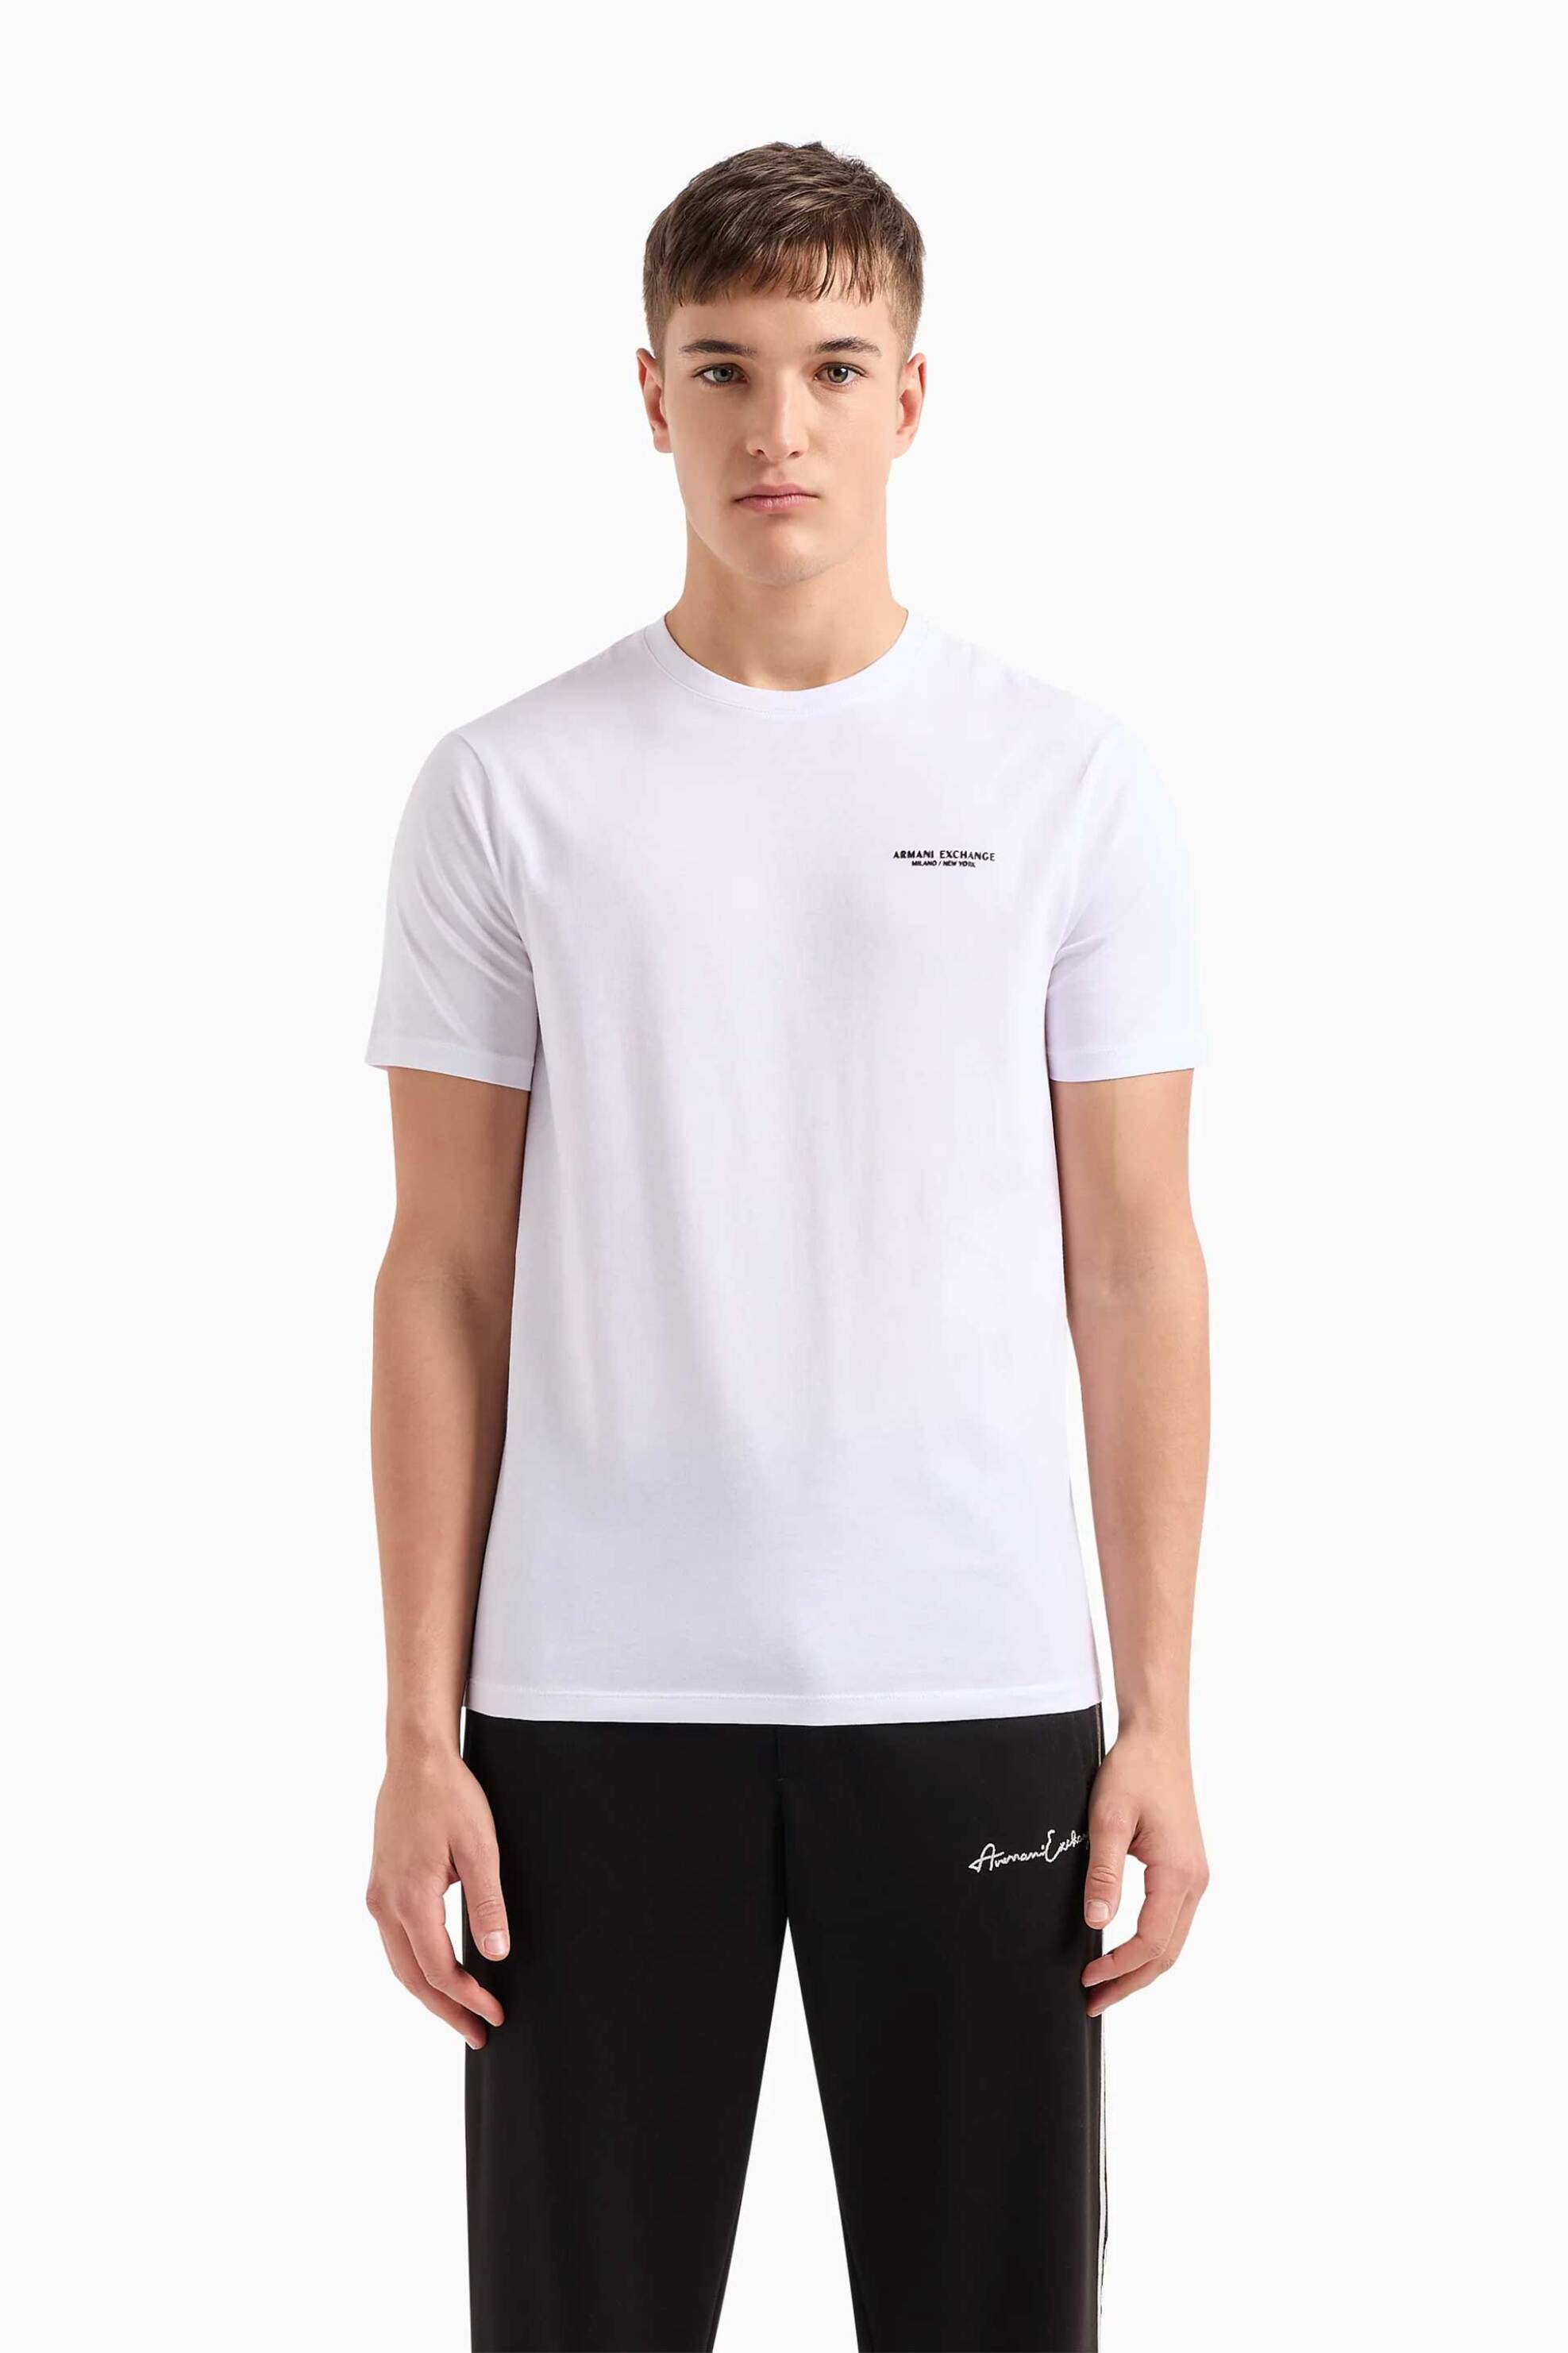 Ανδρική Μόδα > Ανδρικά Ρούχα > Ανδρικές Μπλούζες > Ανδρικά T-Shirts Armani Exchange ανδρικό T-shirt μονόχρωμο με logo print Regular Fit - 8NZT91Z8H4Z Λευκό